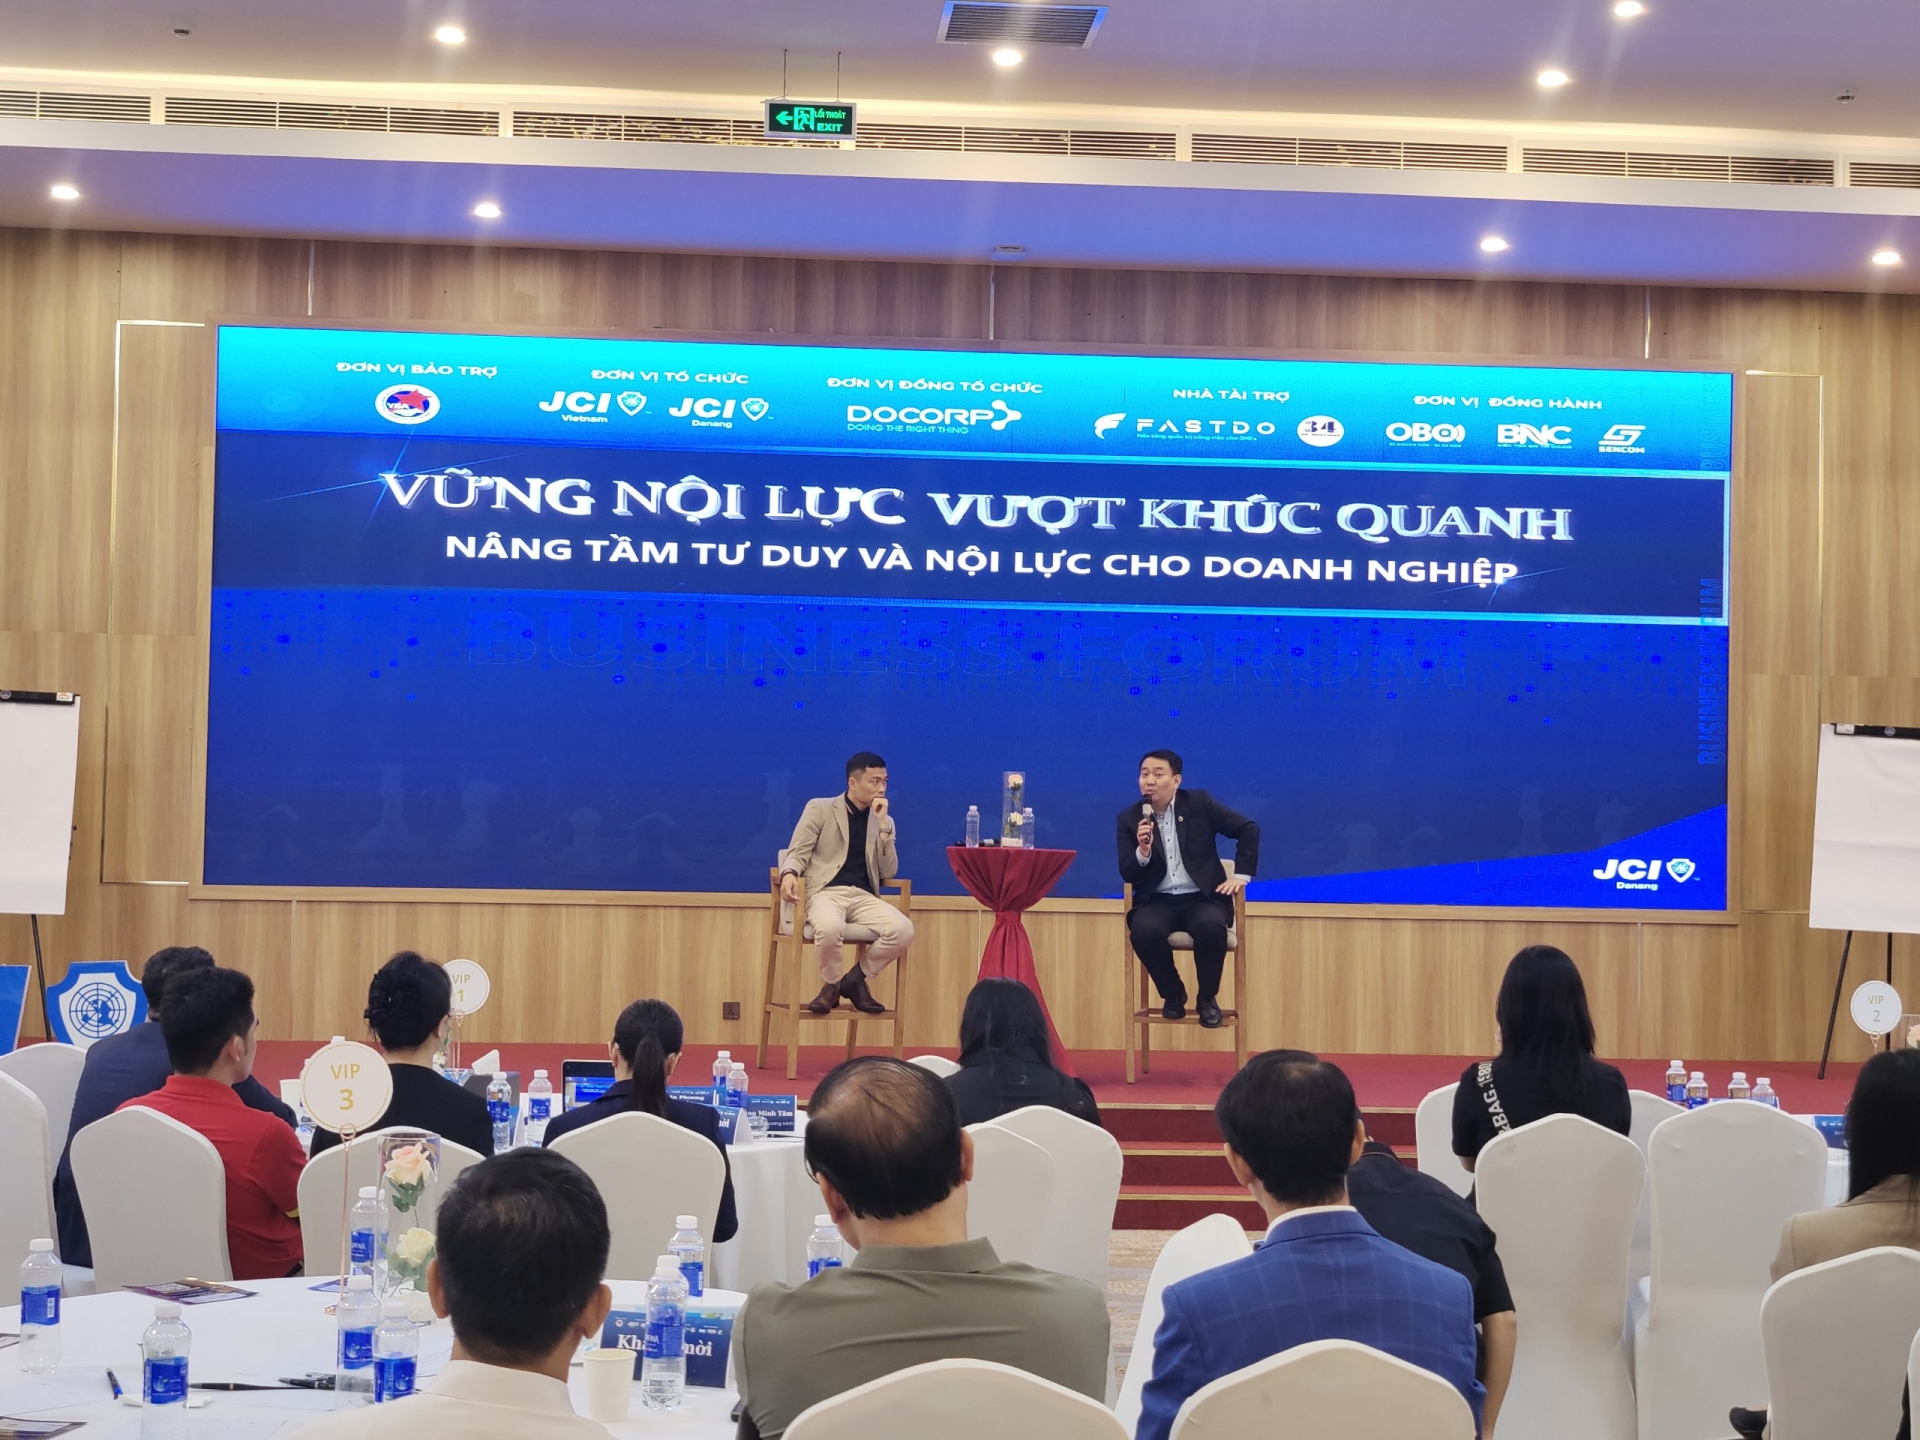 Ngày 19/5, JCI Đà Nẵng đã tổ chức Hội thảo “Vững nội lực, vượt khúc quanh - Nâng tầm tư duy và nội lực cho doanh nghiệp”.